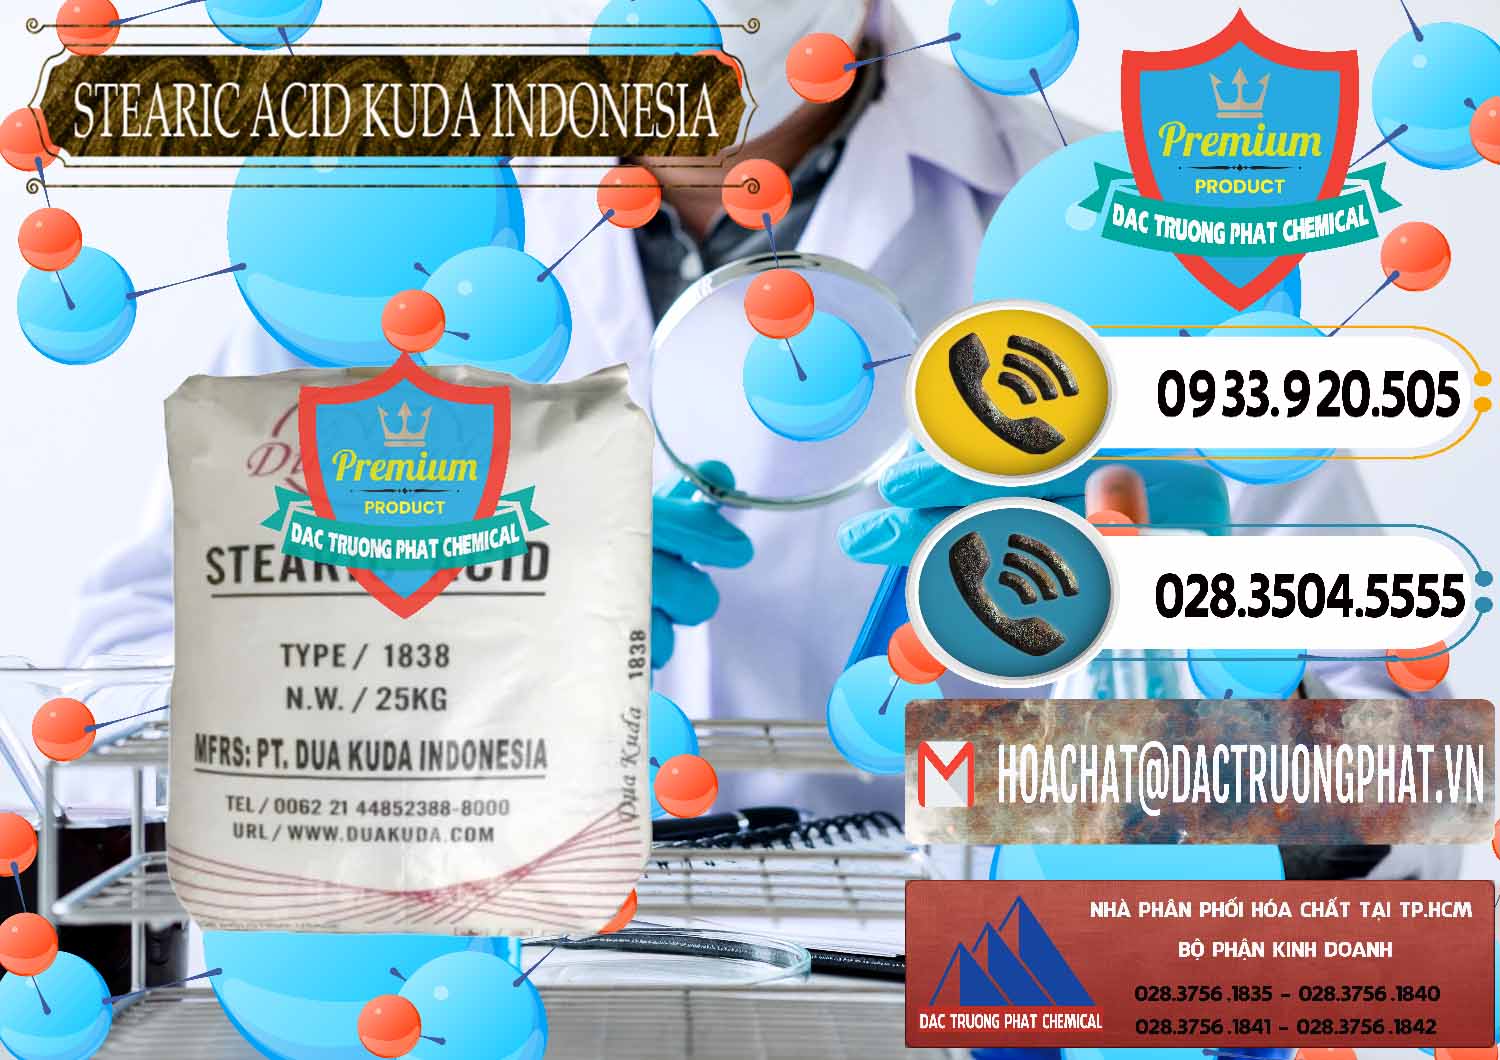 Cty cung ứng - bán Axit Stearic - Stearic Acid Dua Kuda Indonesia - 0388 - Nơi phân phối và nhập khẩu hóa chất tại TP.HCM - hoachatdetnhuom.vn